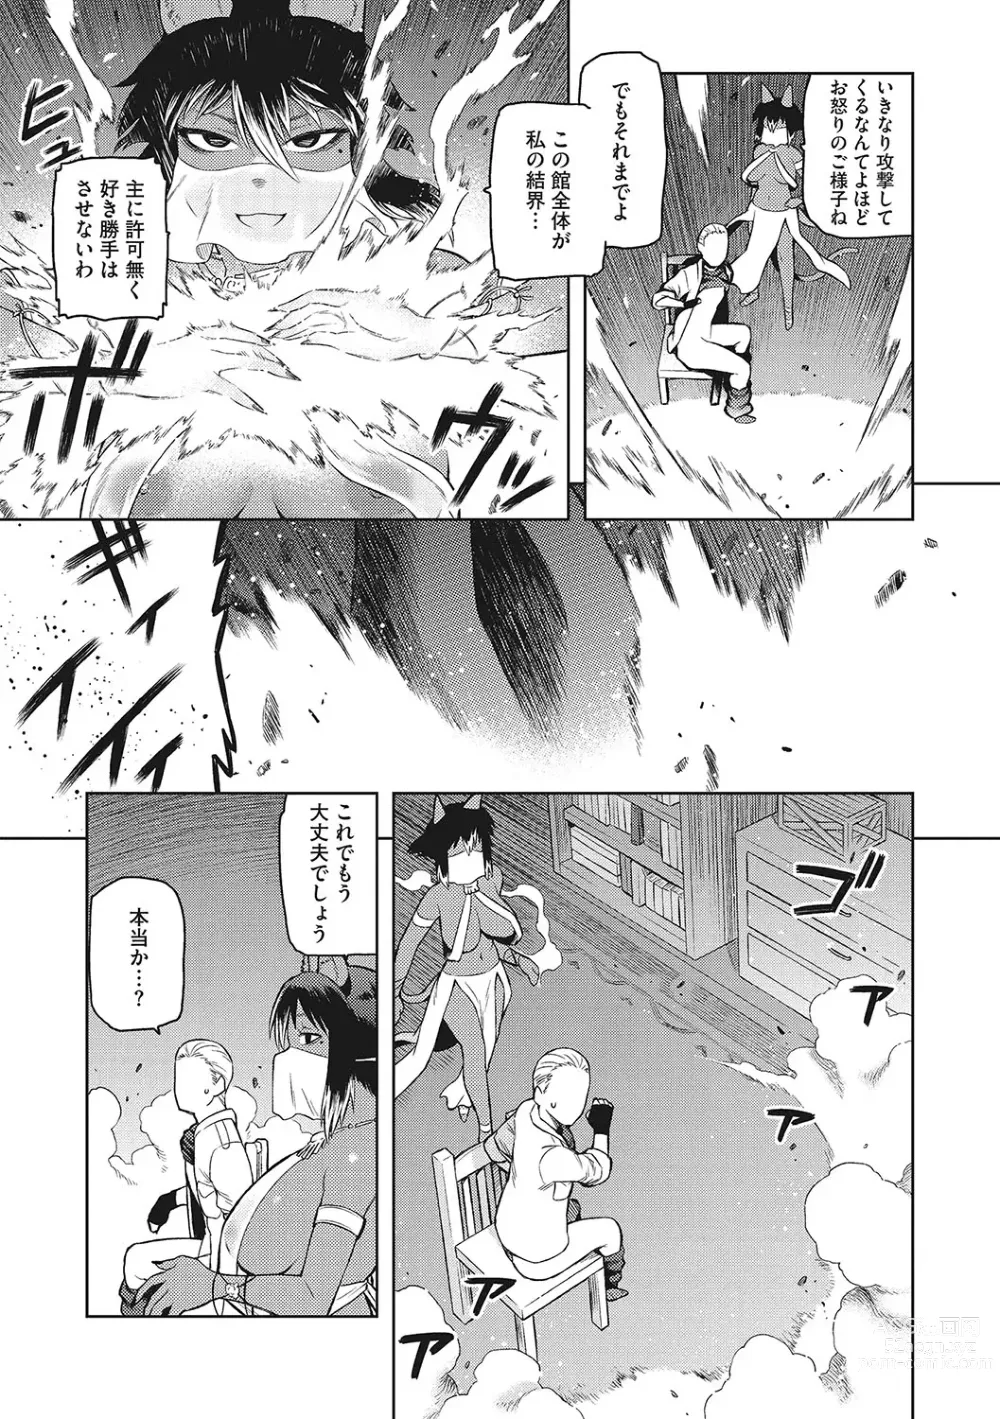 Page 202 of manga I.SyuWa.Karn Alph Lyla